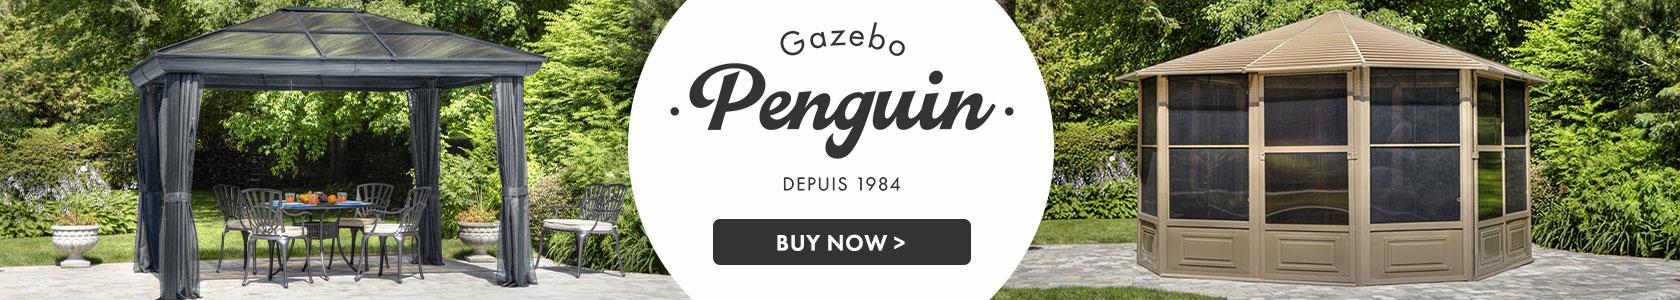 GAZEBO PENGUIN banner